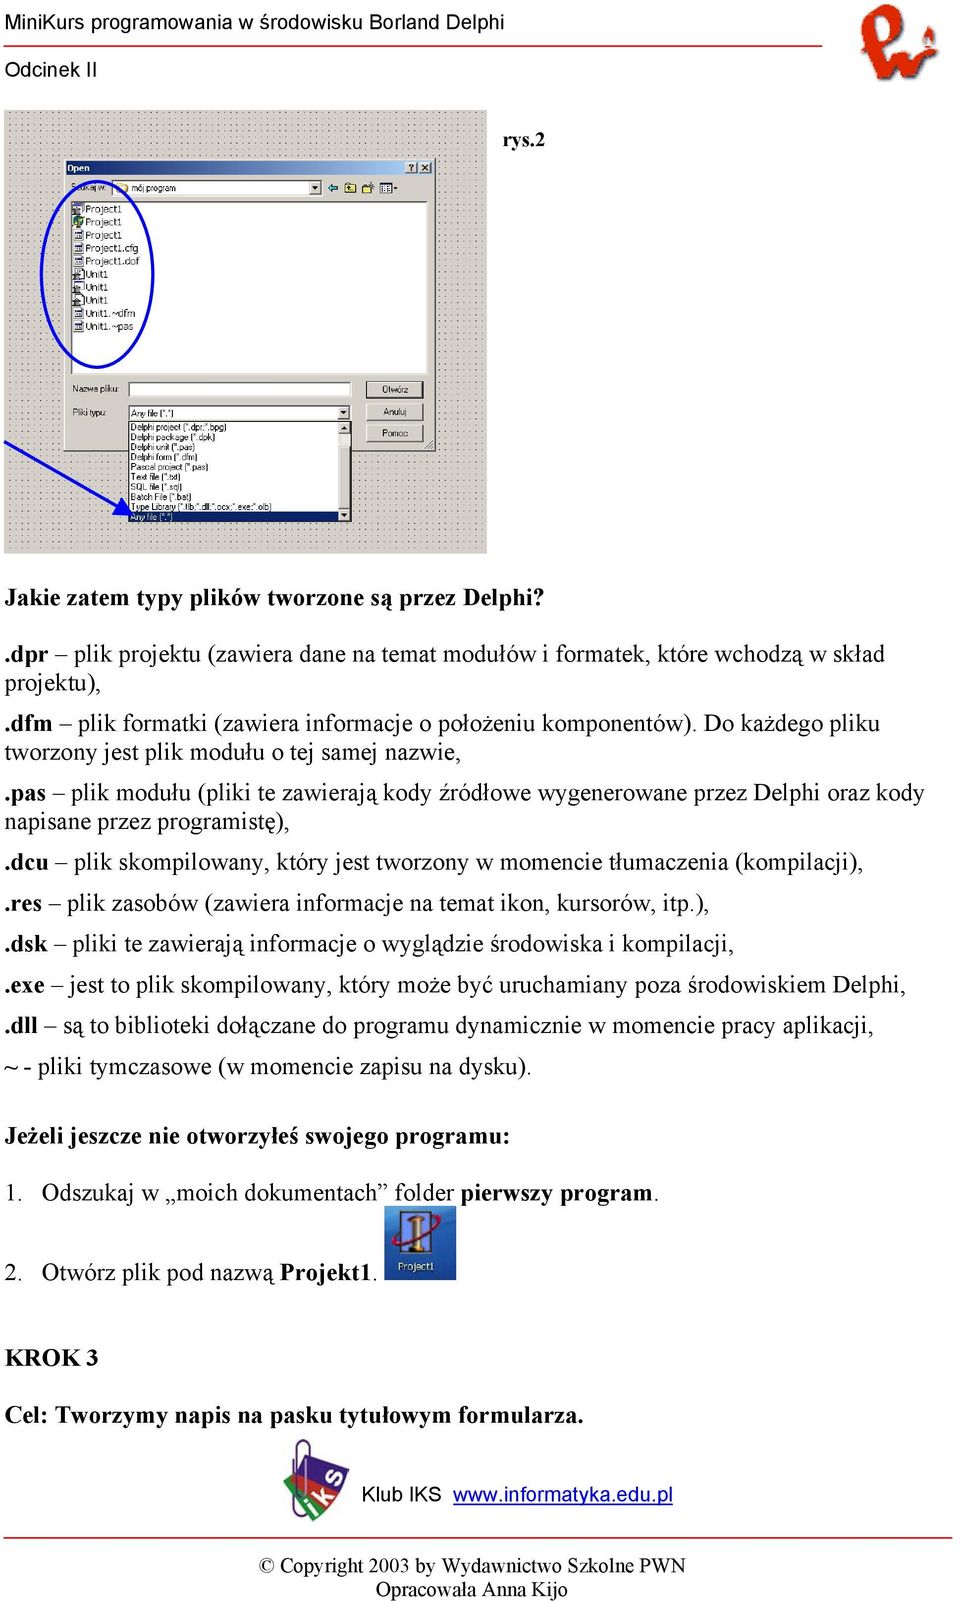 pas plik modułu (pliki te zawierają kody źródłowe wygenerowane przez Delphi oraz kody napisane przez programistę),.dcu plik skompilowany, który jest tworzony w momencie tłumaczenia (kompilacji),.